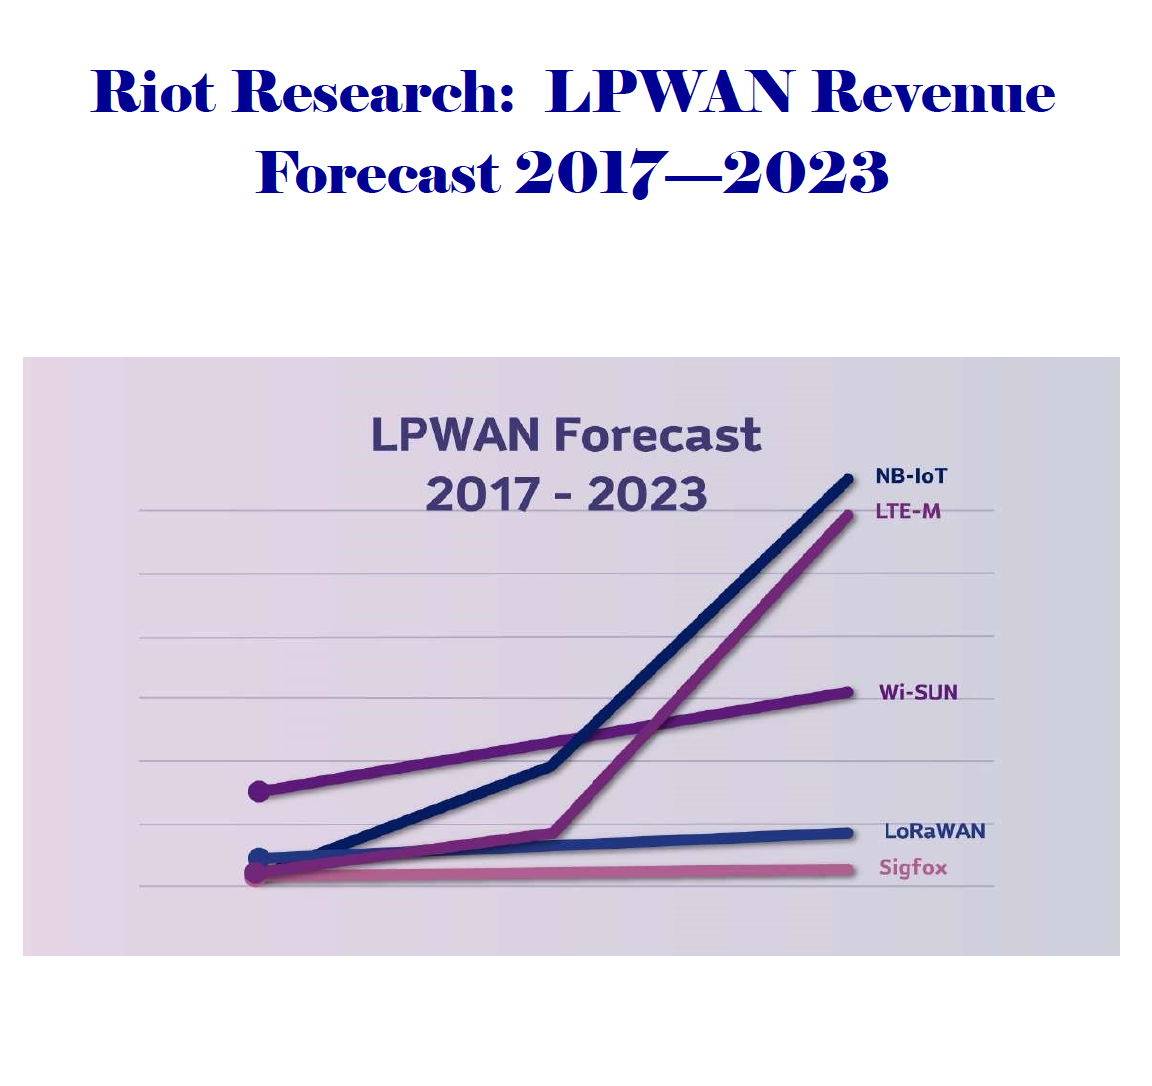 LPWAN Revenue Forecast, 2017 to 2023